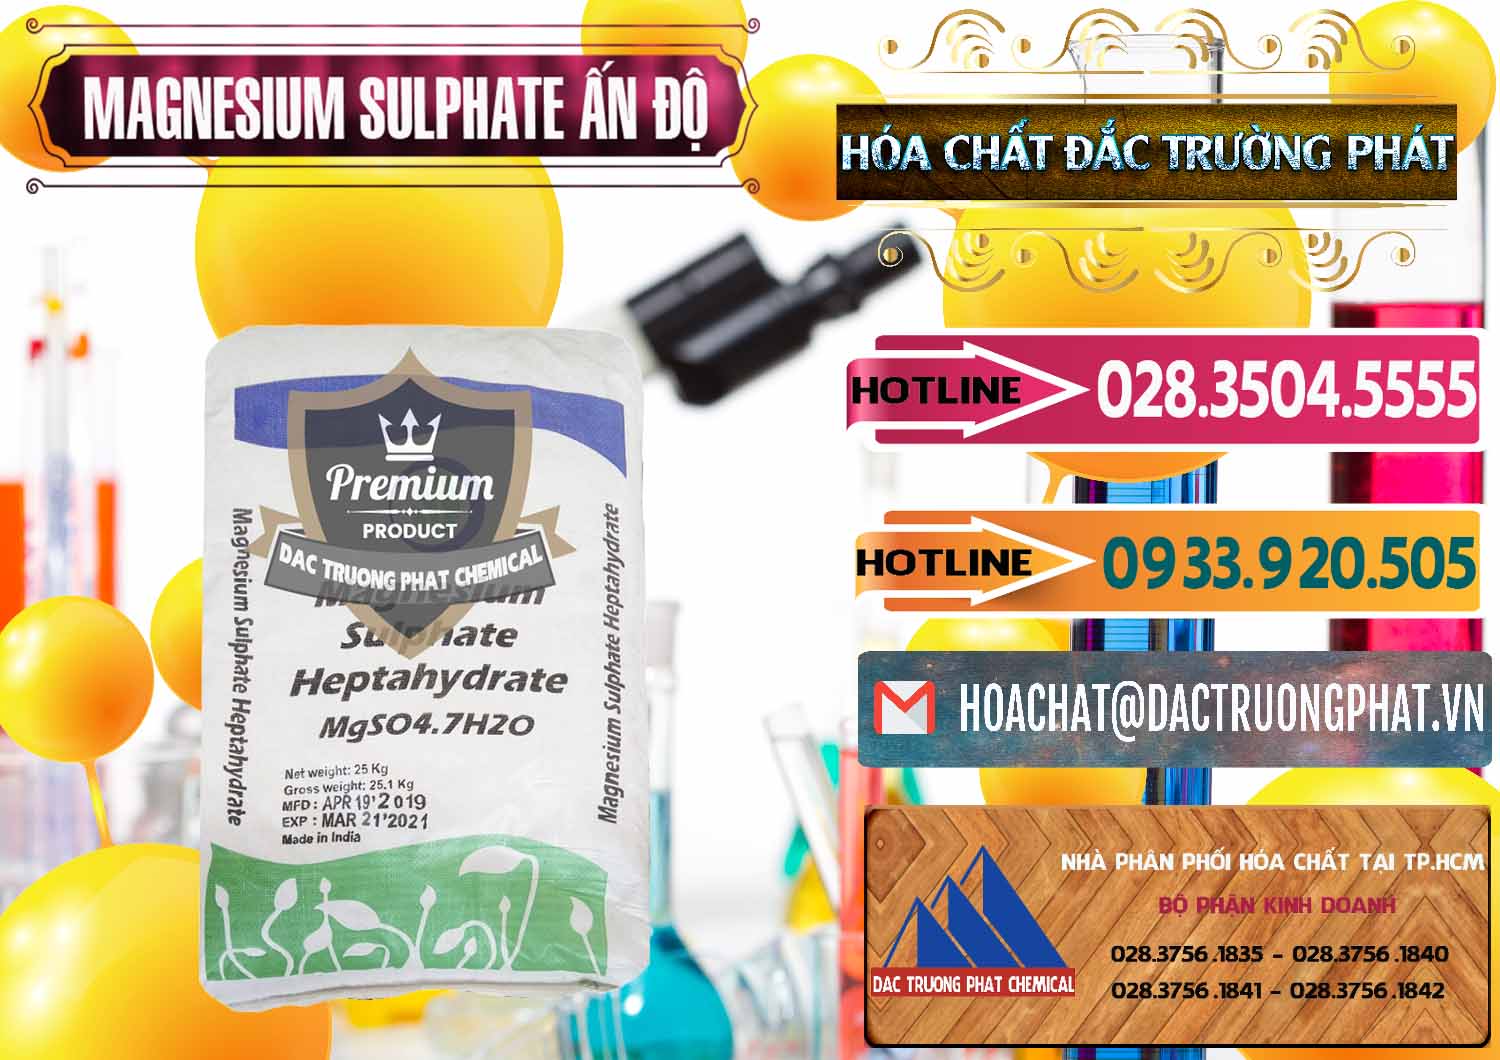 Cty chuyên bán - cung cấp MGSO4.7H2O – Magnesium Sulphate Heptahydrate Ấn Độ India - 0362 - Công ty cung ứng và phân phối hóa chất tại TP.HCM - dactruongphat.vn